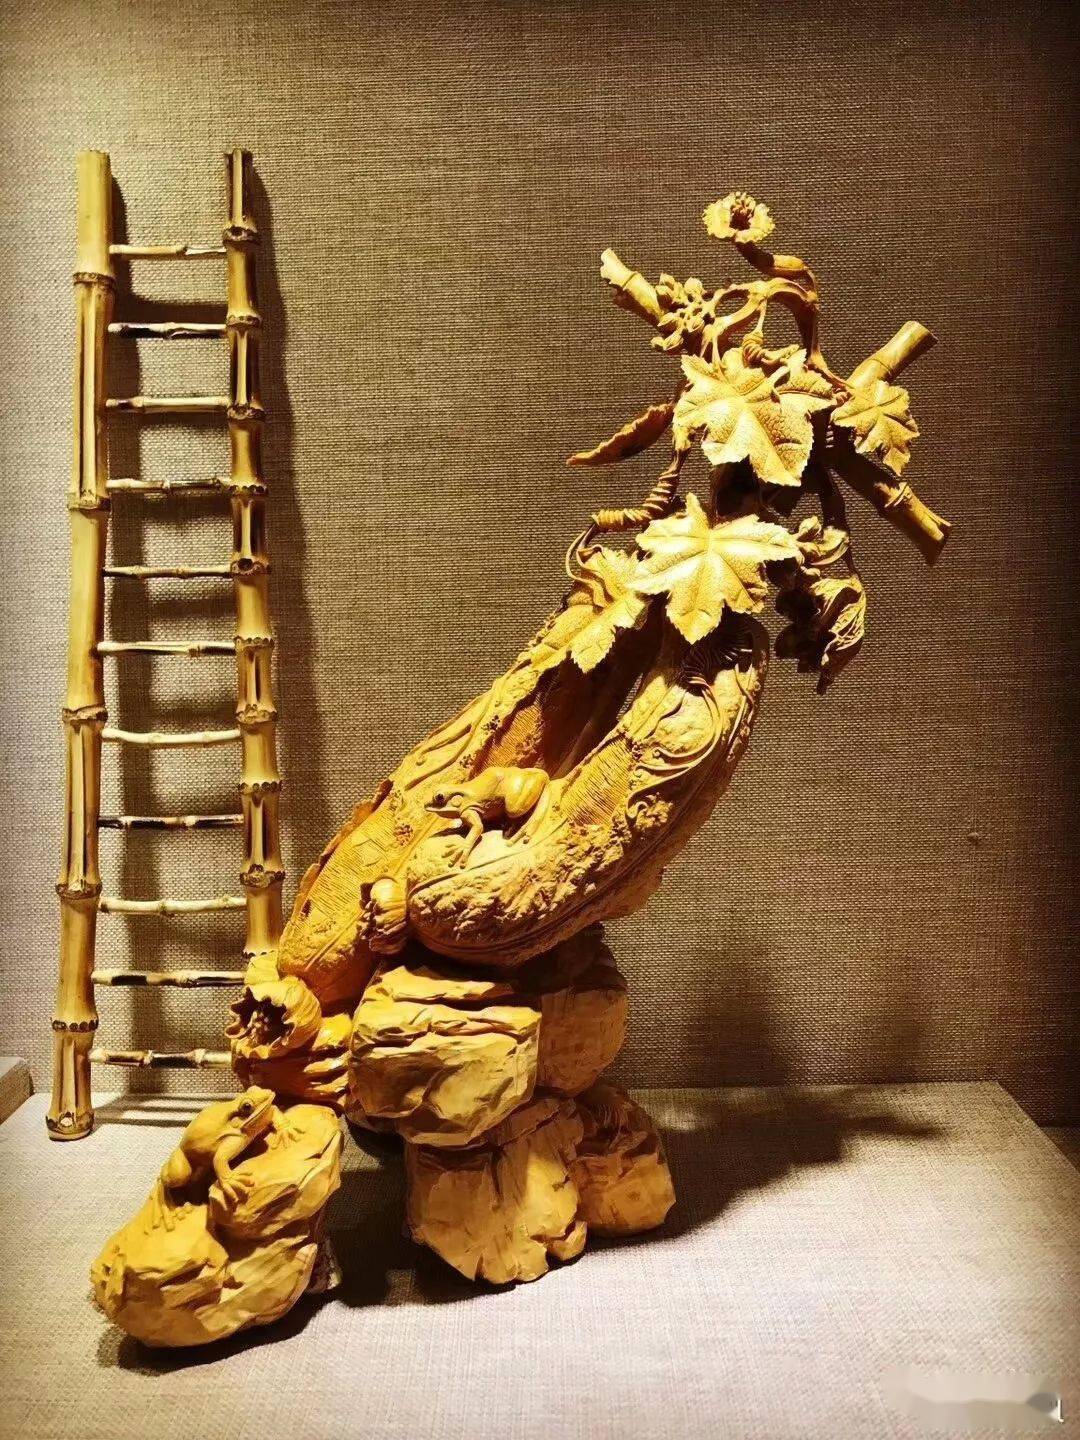 突破传统的黄杨木雕,凸显强烈的艺术效果!